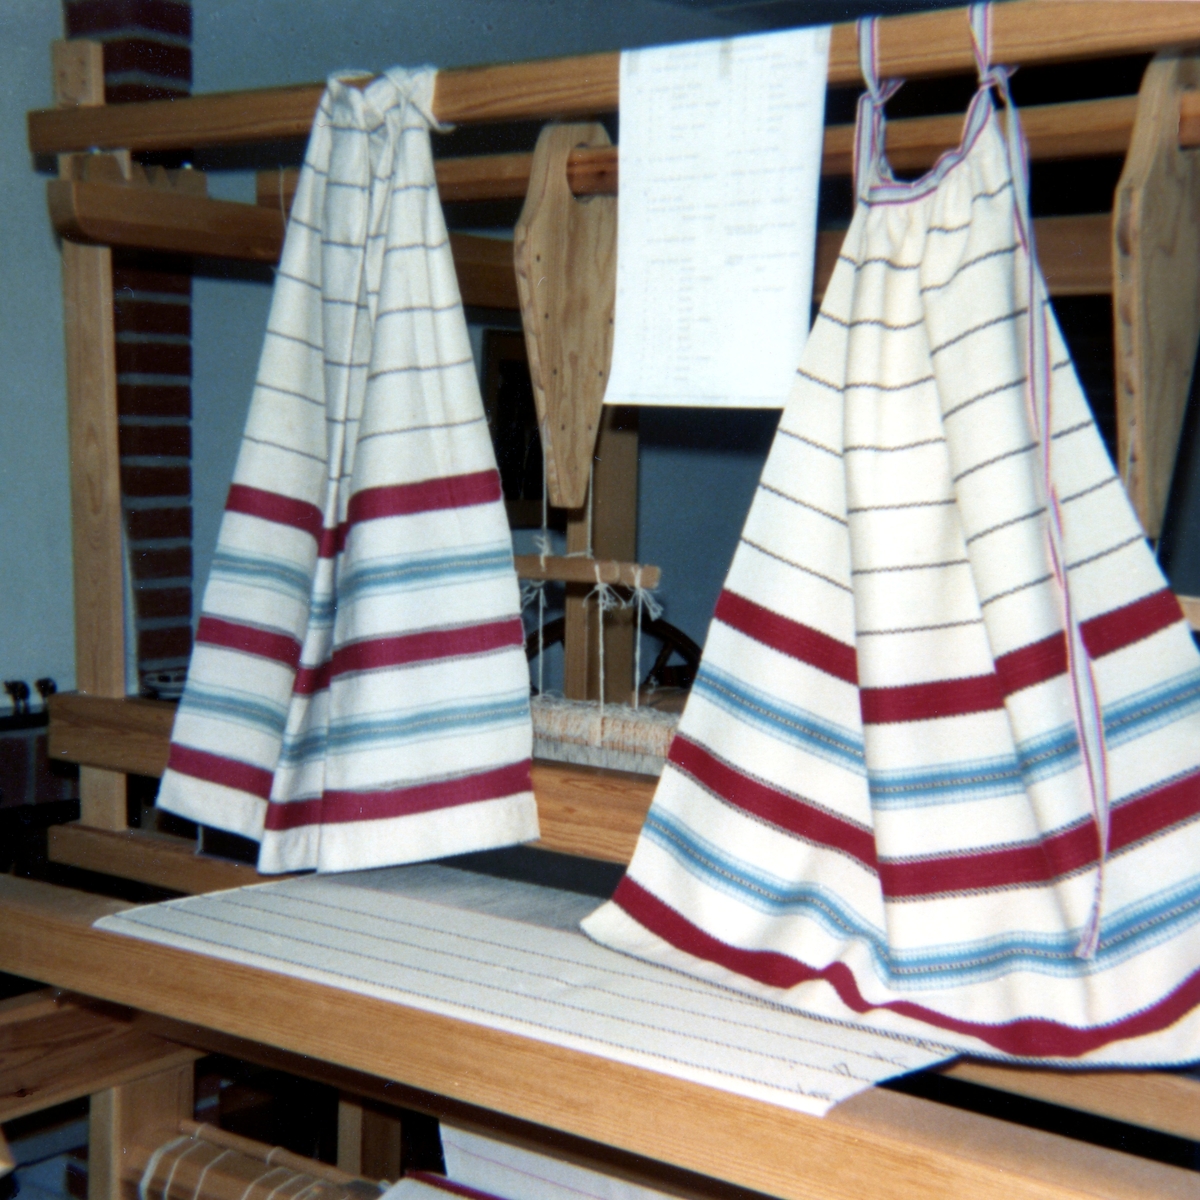 Kållereds Hembygdsgille, 1980-tal. Förlagor, som hänger i en vävstol, till Kållereds Hembygdsdräkt från Sporred. Till vänster ses förlagan till förkläde och till höger en uppvävd kopia.